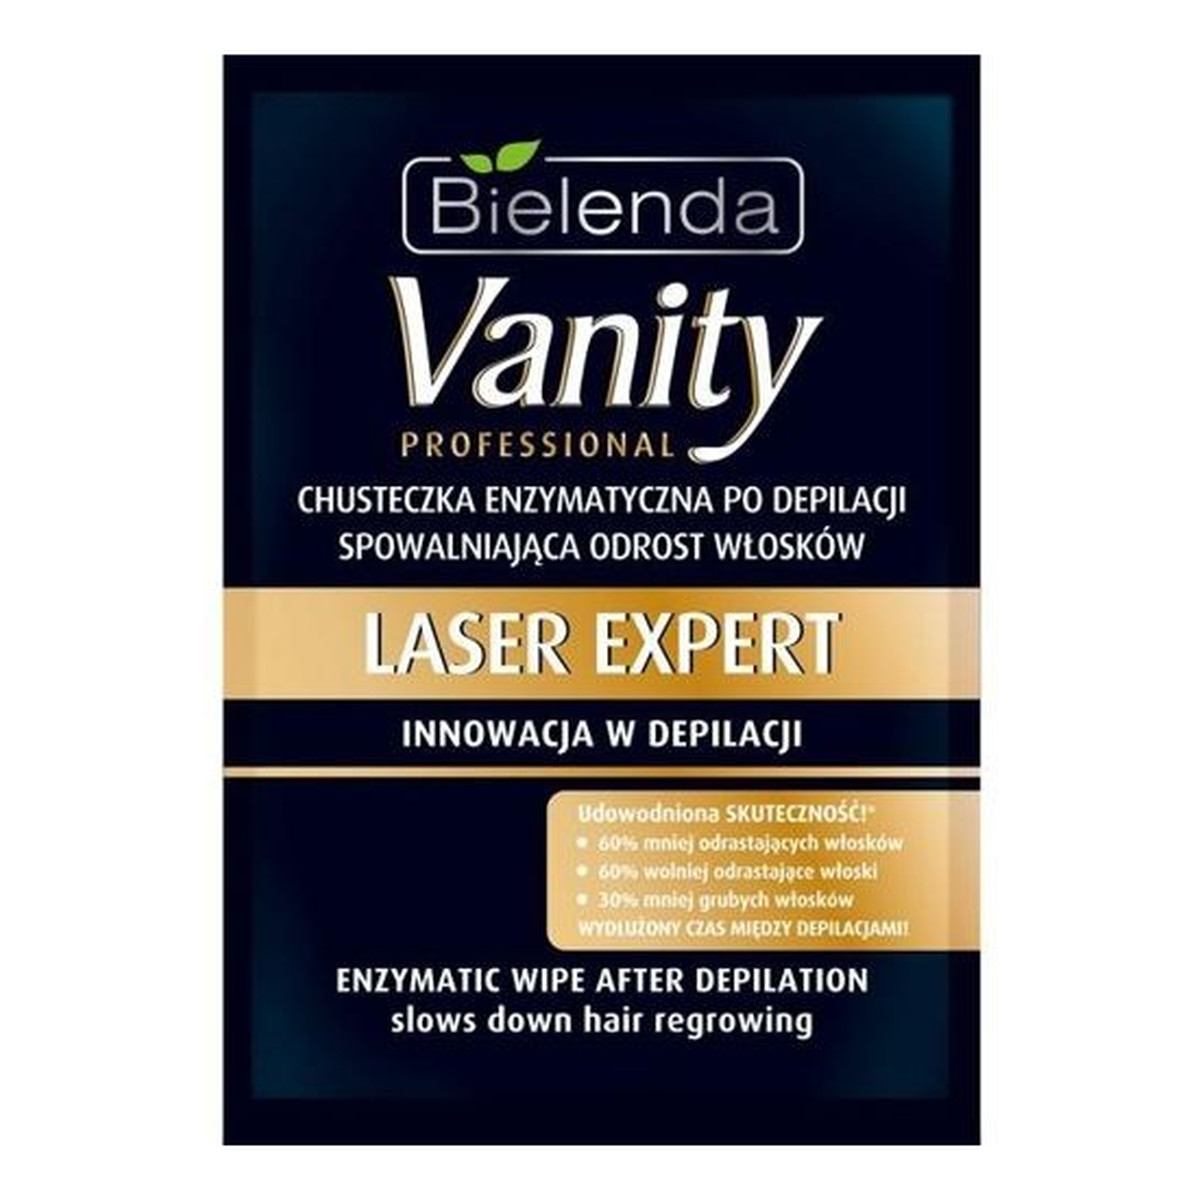 Bielenda Vanity Laser Expert Chusteczka Enzymatyczna Po Depilacji